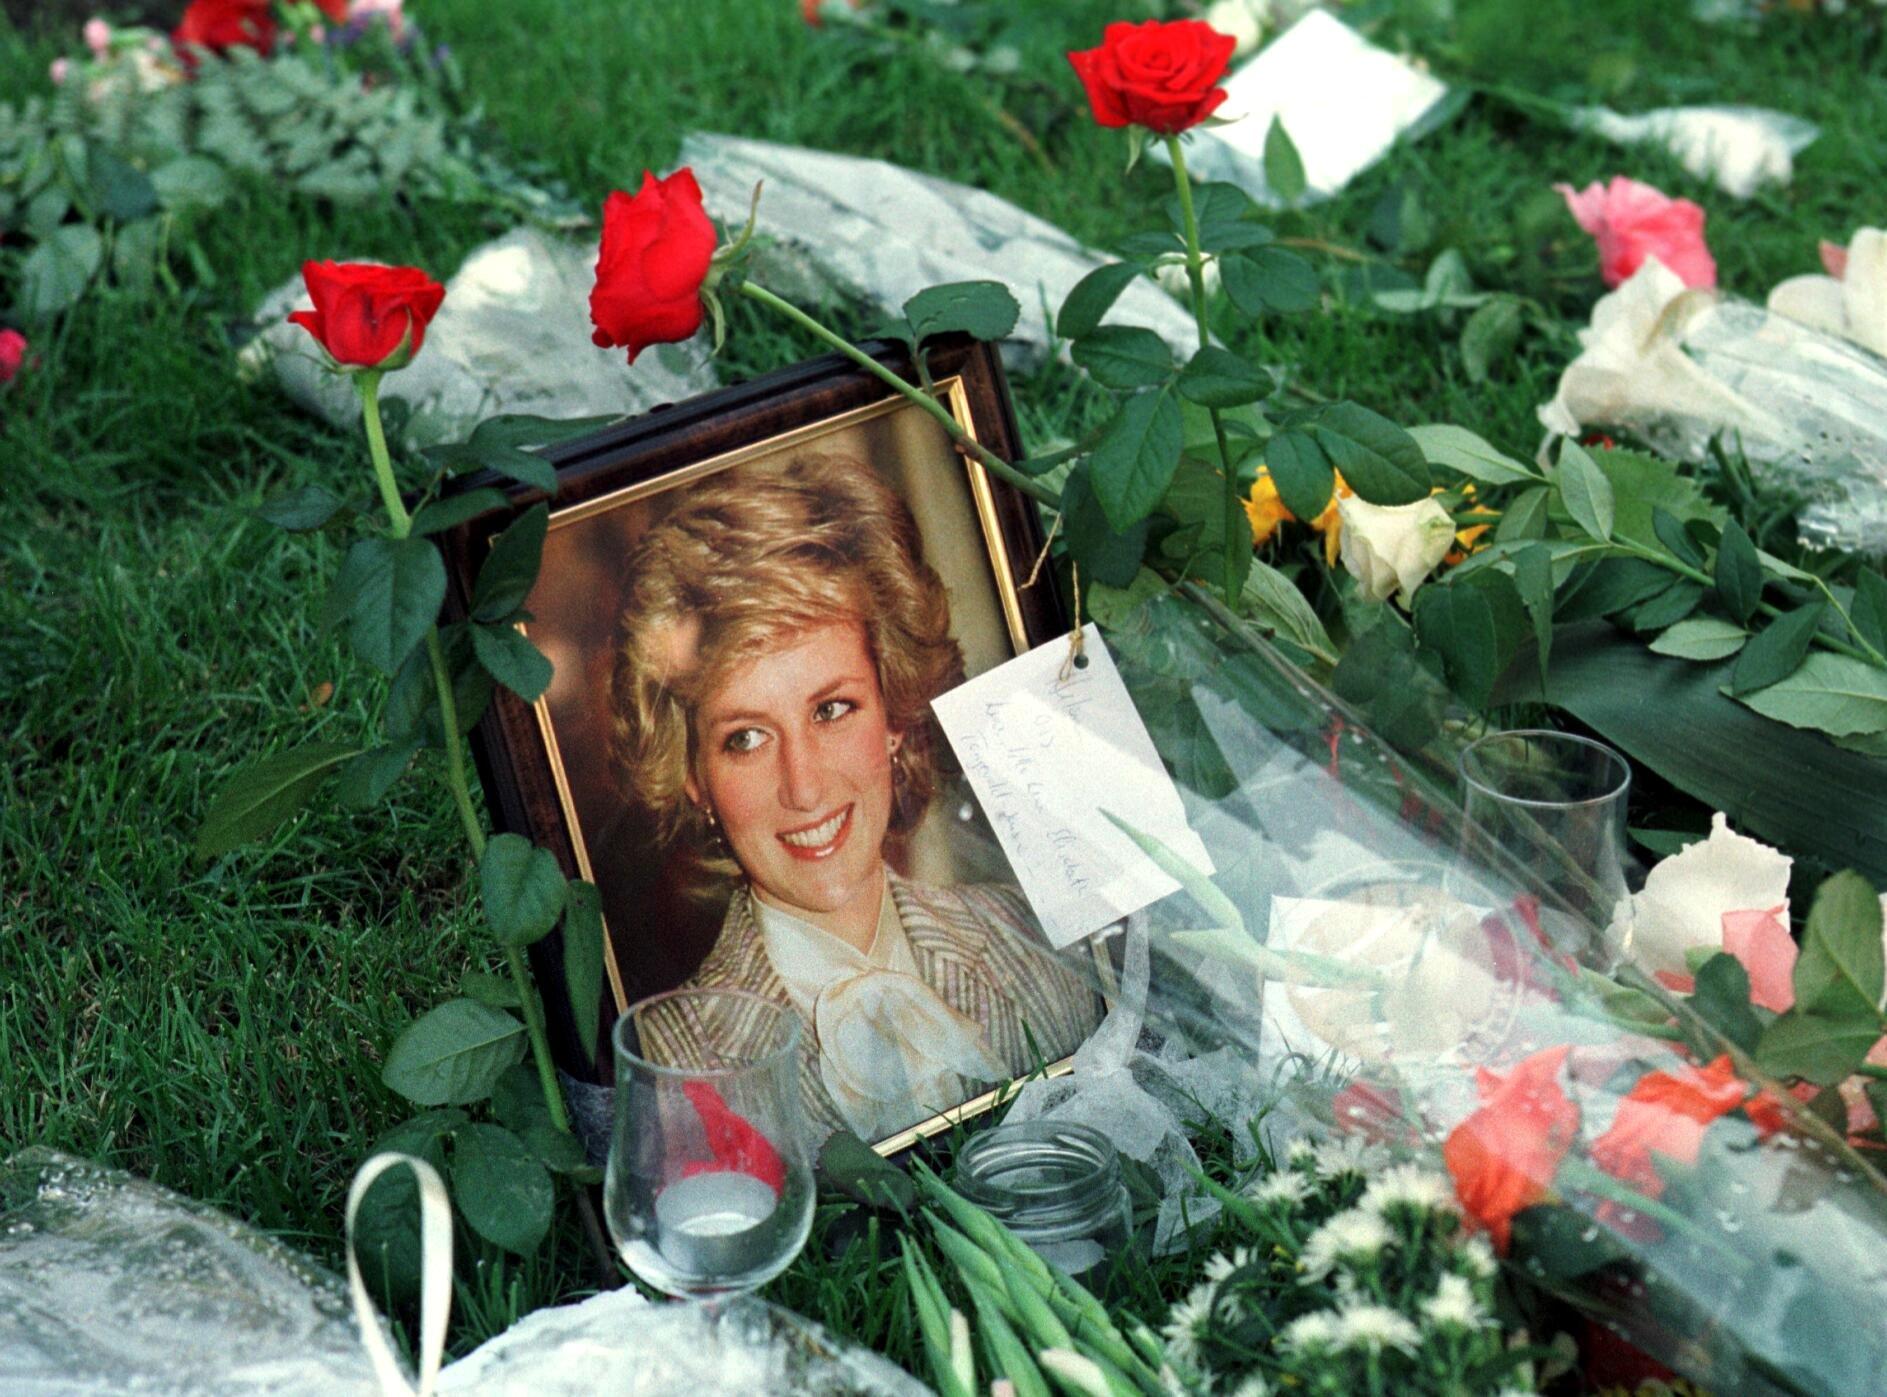 Over hele verden sørget folk over prinsesse Diana, også i Norge. Blomsterhilsener ble lagt ned utenfor den britiske ambassaden i Oslo få dager etter Dianas død.